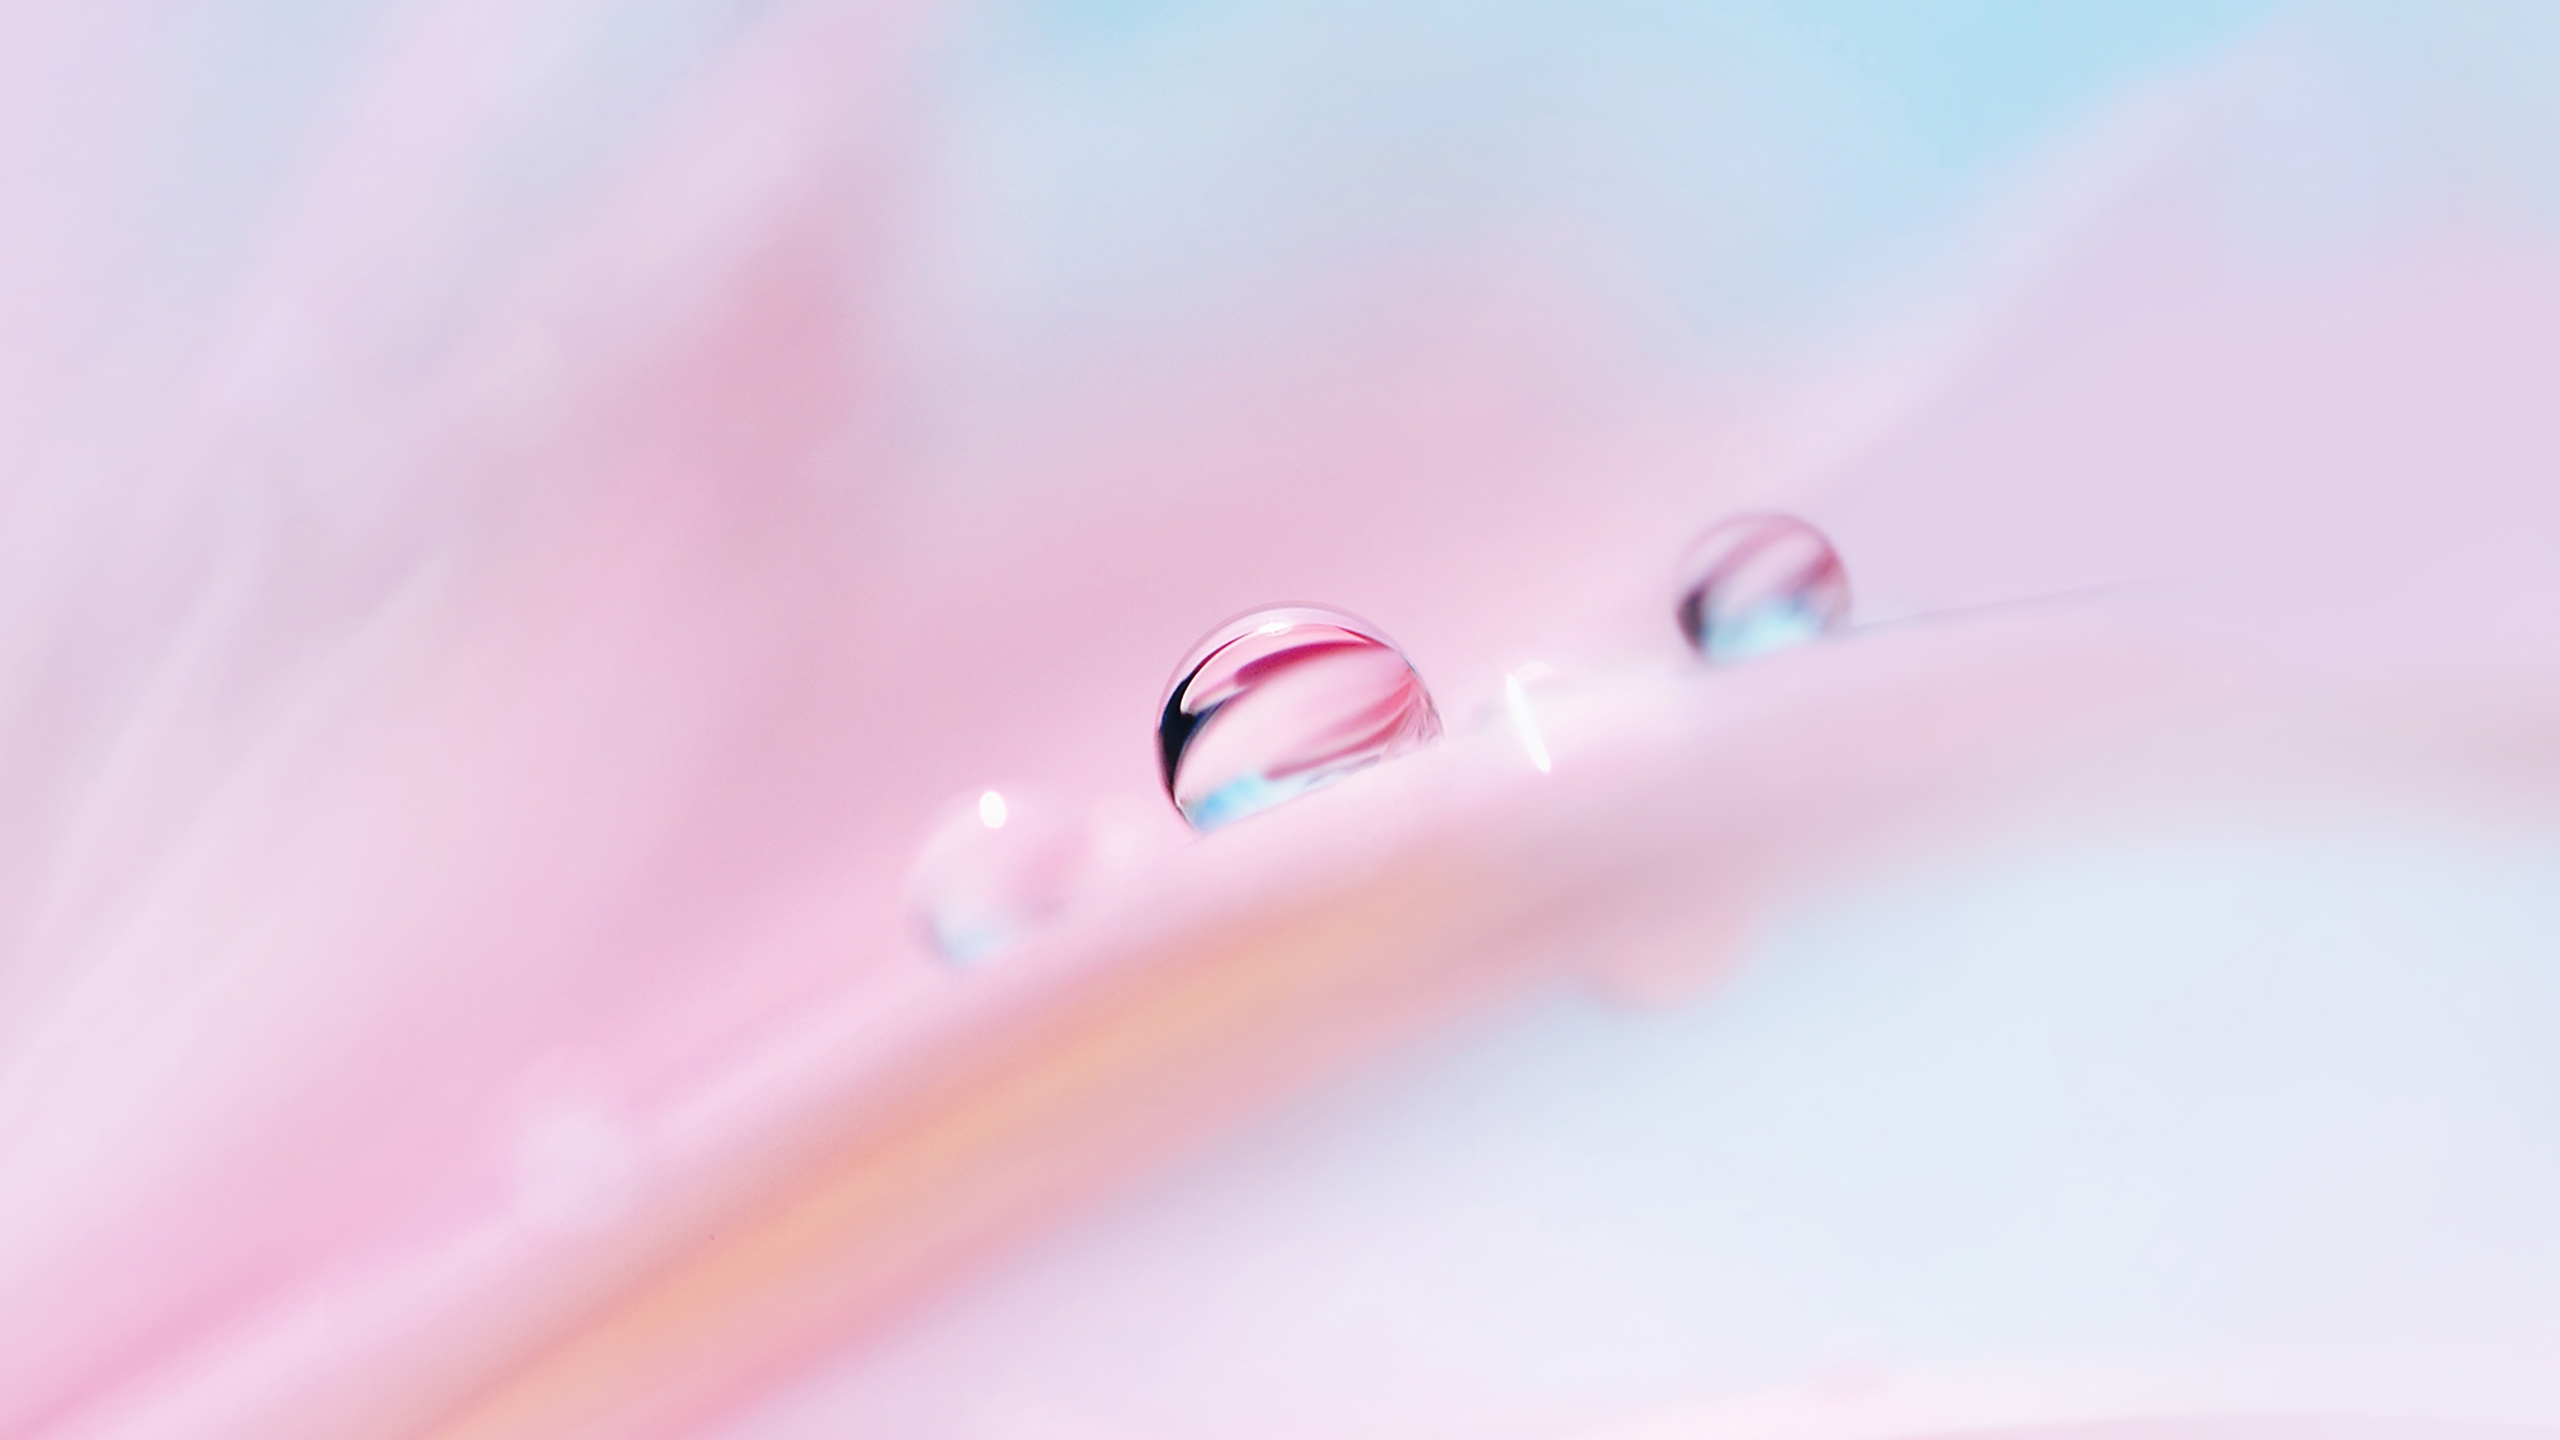 Raindrops on soft pink petals